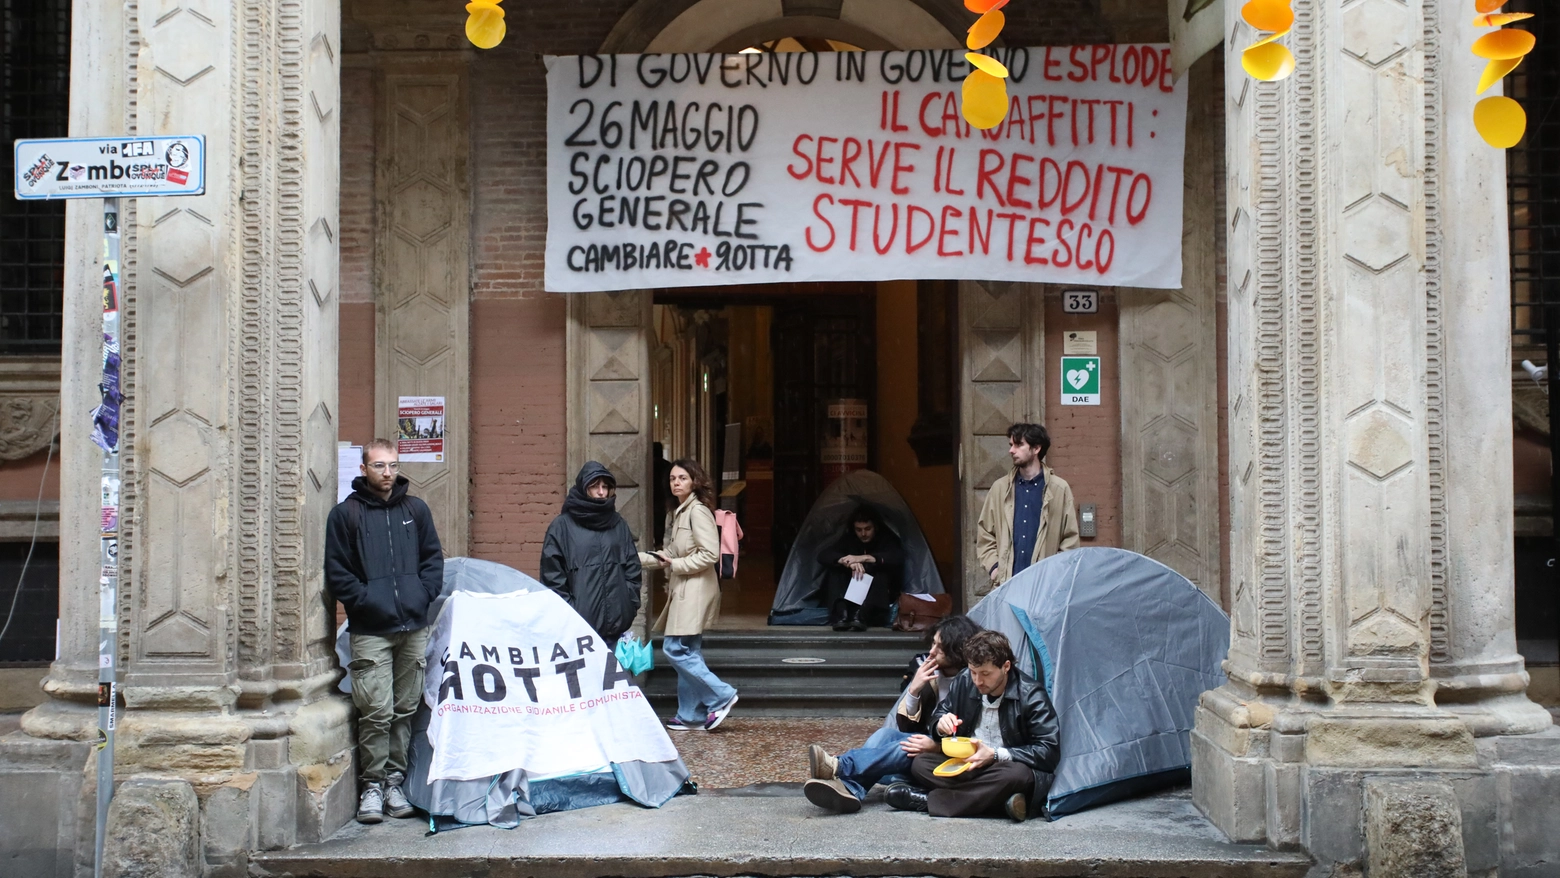 La protesta degli studenti davanti al Rettorato contro il caro affitti